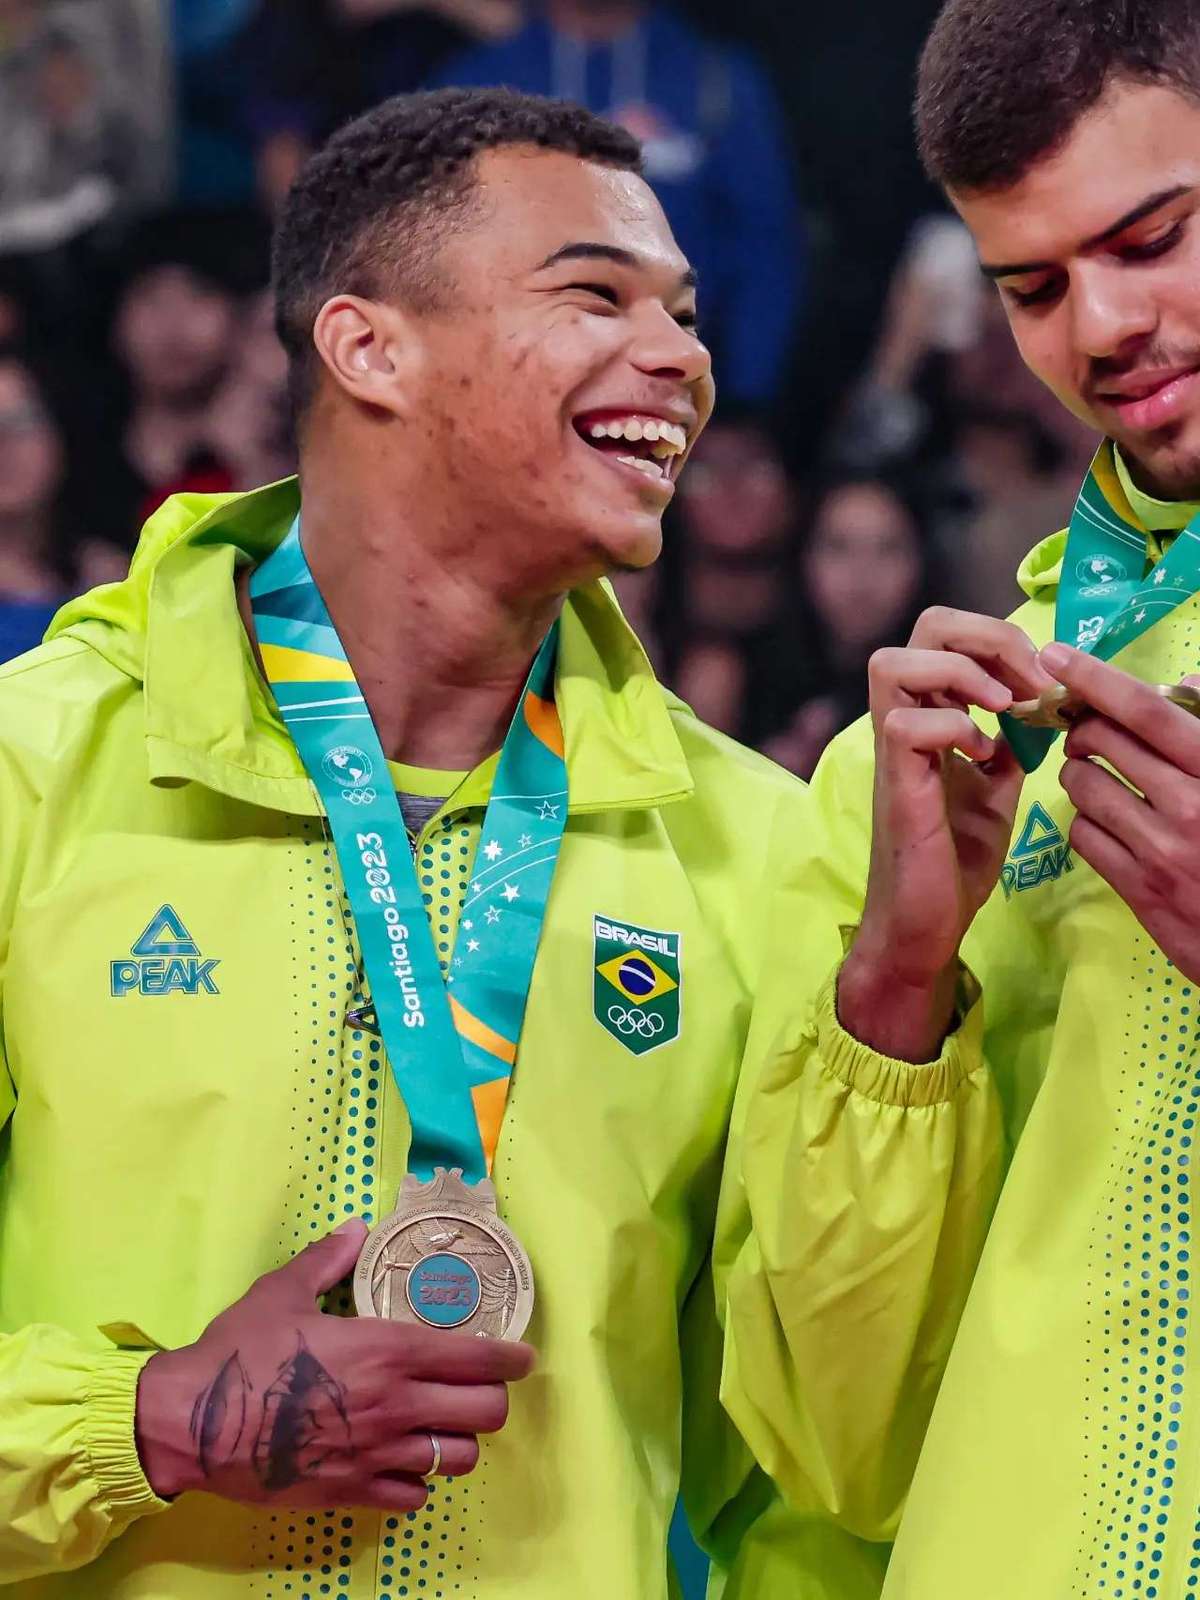 Medalha 200: Brasil bate Chile, ganha ouro no futebol e encerra tabu